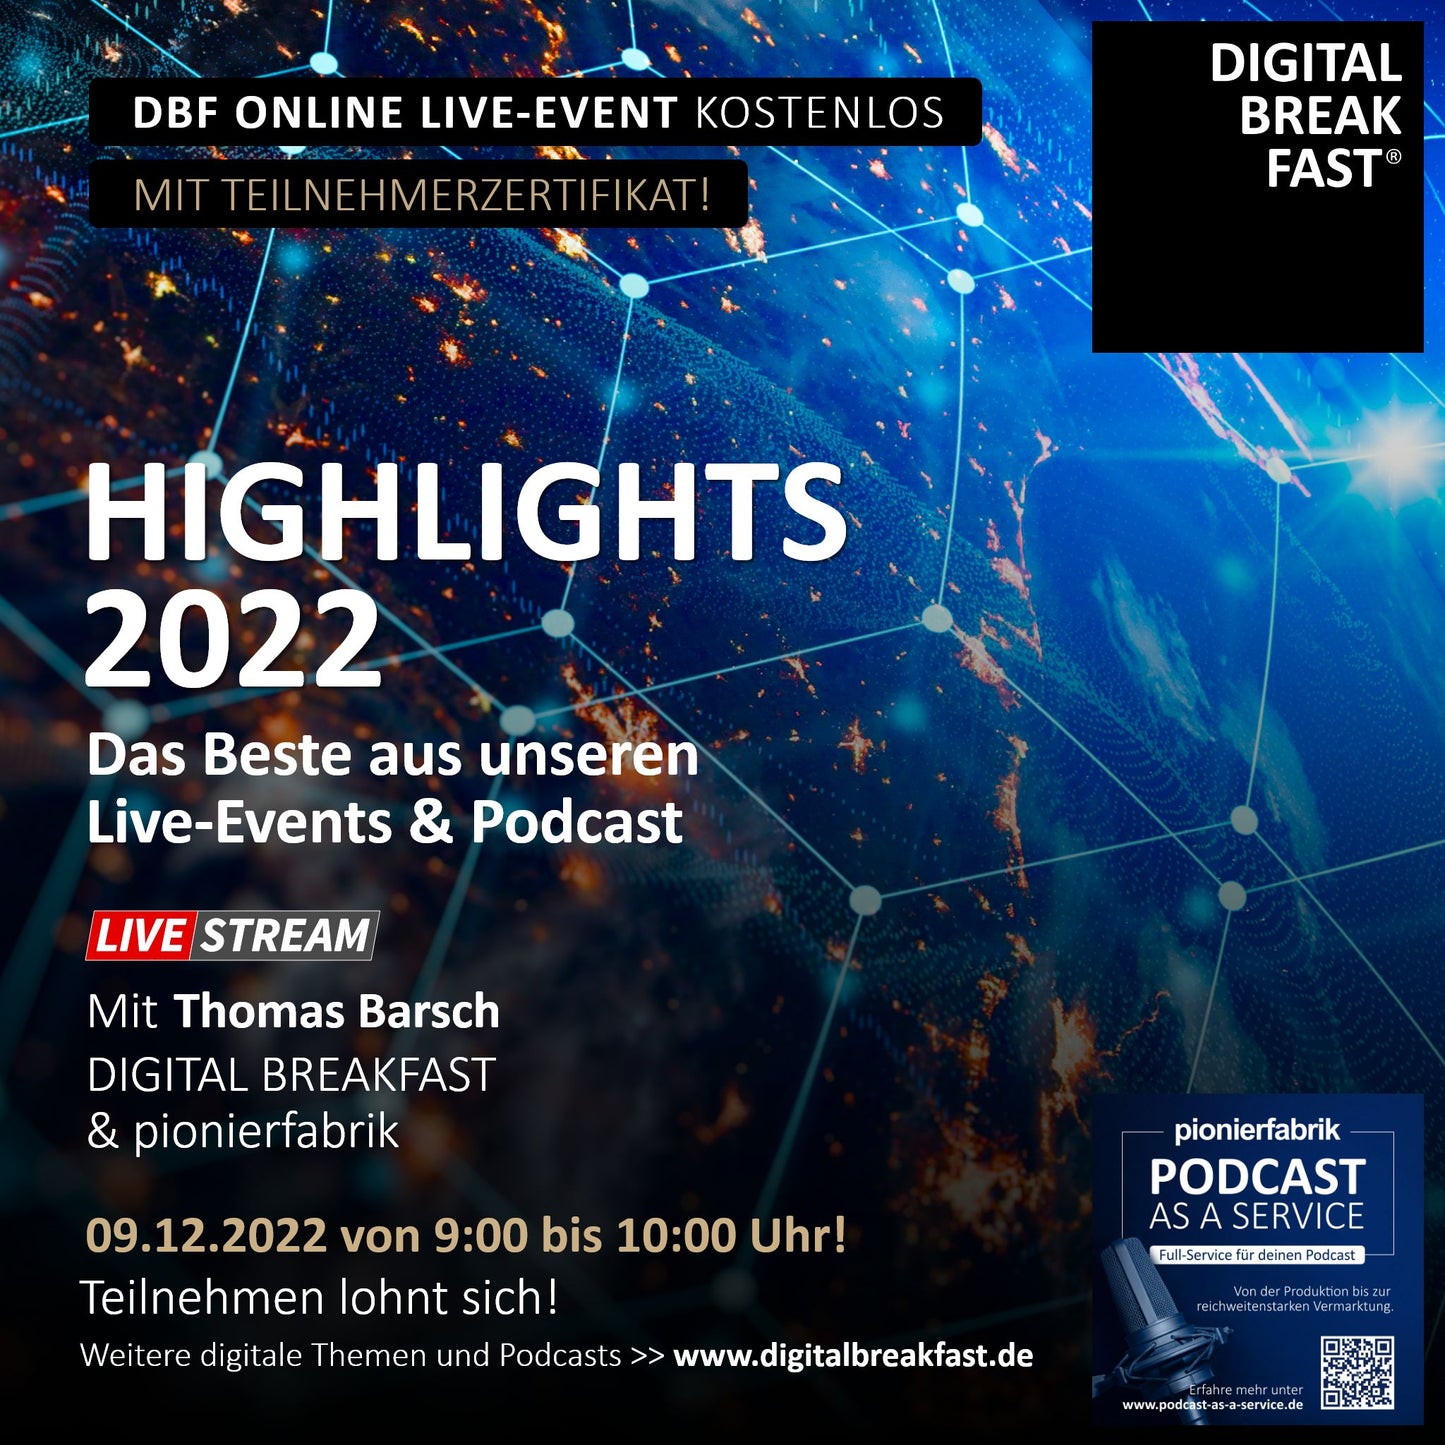 09.12.2022 | Highlights 2022 - Das Beste aus unseren Live-Events & Podcasts | Thomas Barsch | DIGITAL BREAKFAST